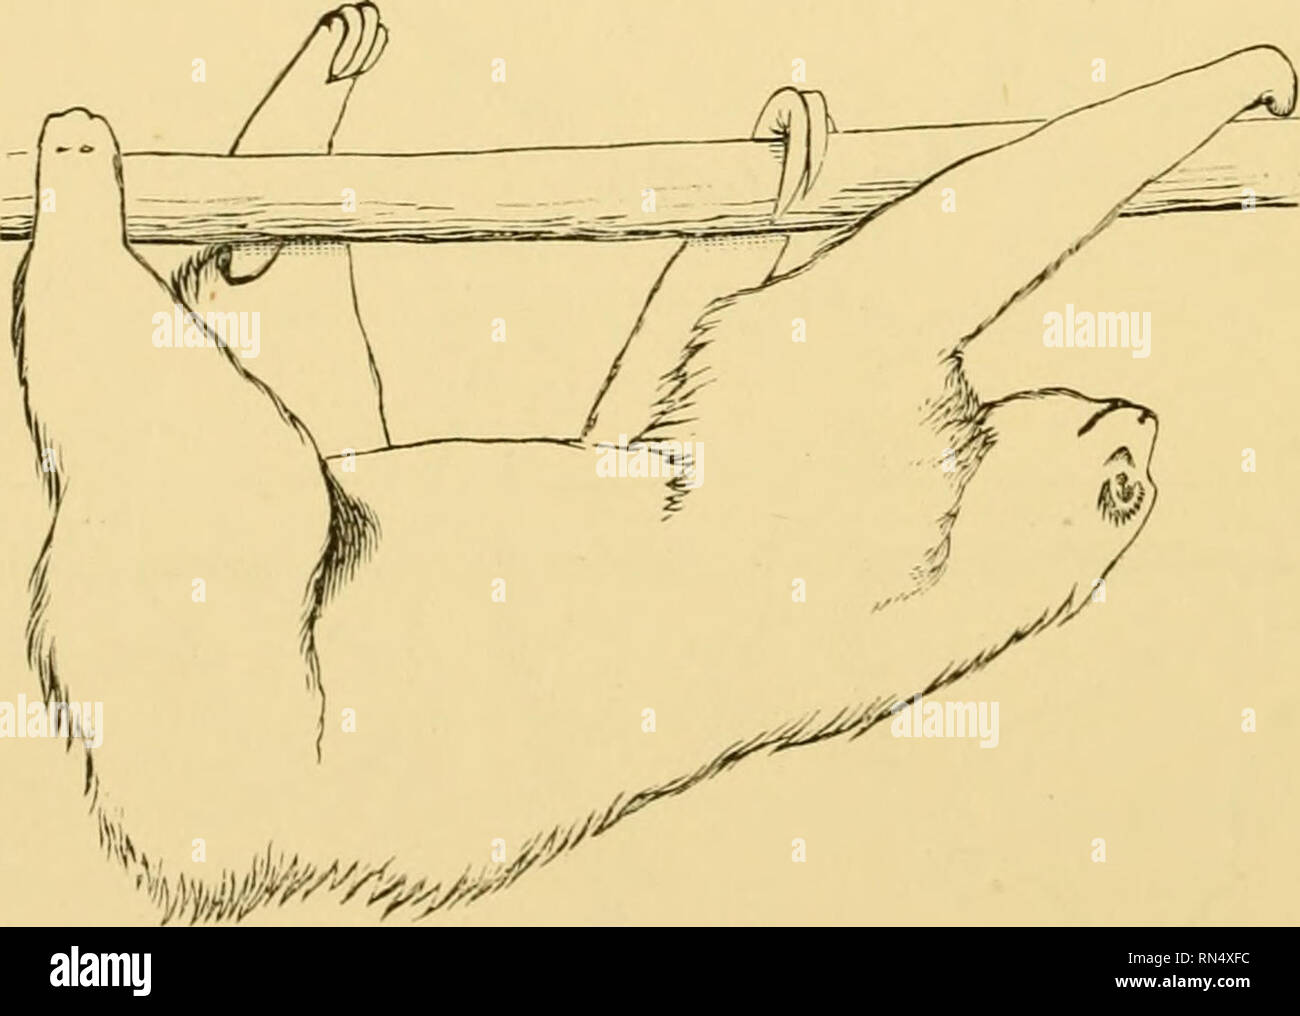 . Locomozione animale : il Muybridge lavoro presso la University of Pennsylvania : il metodo e il risultato. Muybridge, Eadweard, 1830-1904; cavalli; Locomozione animale; la fotografia istantanea. In Figg. 4 e 5 la sinistra arto anteriore è oscillata in avanti al di sopra del livello del pesce persico, e il diritto della zampa posteriore è " spento " e progetti (Fig. 5 della serie.). verso l'alto. In Fig. 6 Tutti gli arti sono di nuovo "A", come in Fig. 1. La ribalta sinistra e destra arto posteriore sono appena venuto "a". La posizione è mantenuta attraverso le figg. 7, 8 e 9.. Si prega di notare che queste immagini vengono estratte dalla scansione Foto Stock